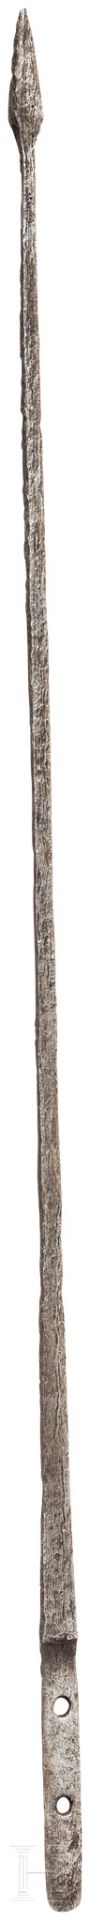 Pilum-Spitze mit Angel, römisch, 2. - 3. Jhdt.Beeindruckend gut erhaltene eiserne Pilumspitze. Die 6 - Bild 2 aus 4